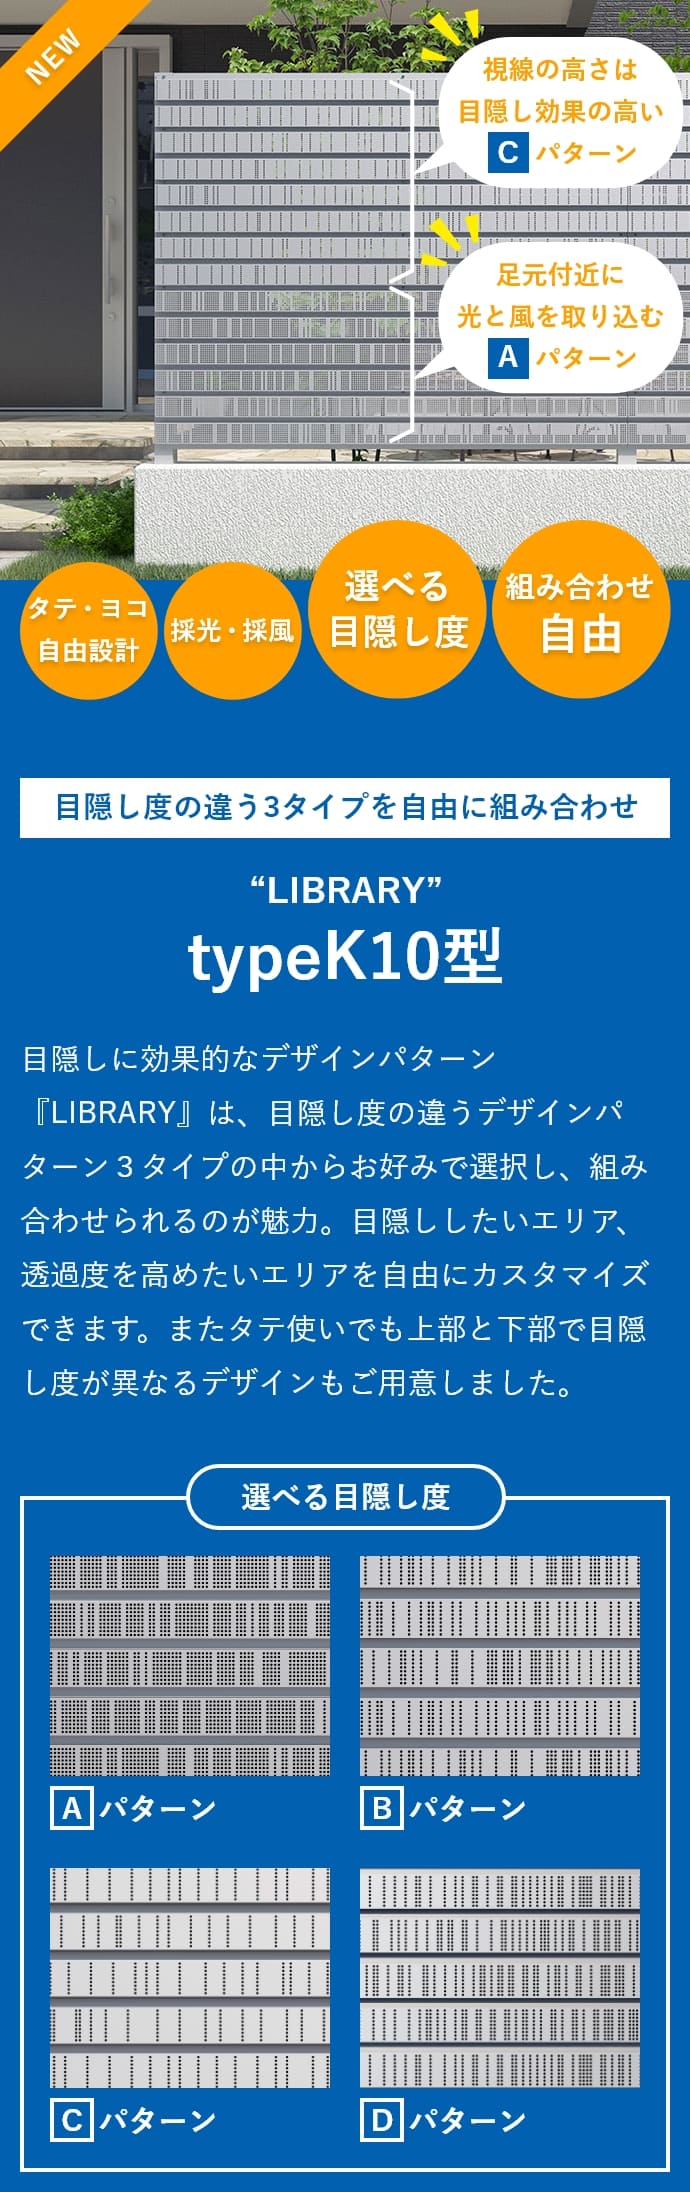 typeK10型